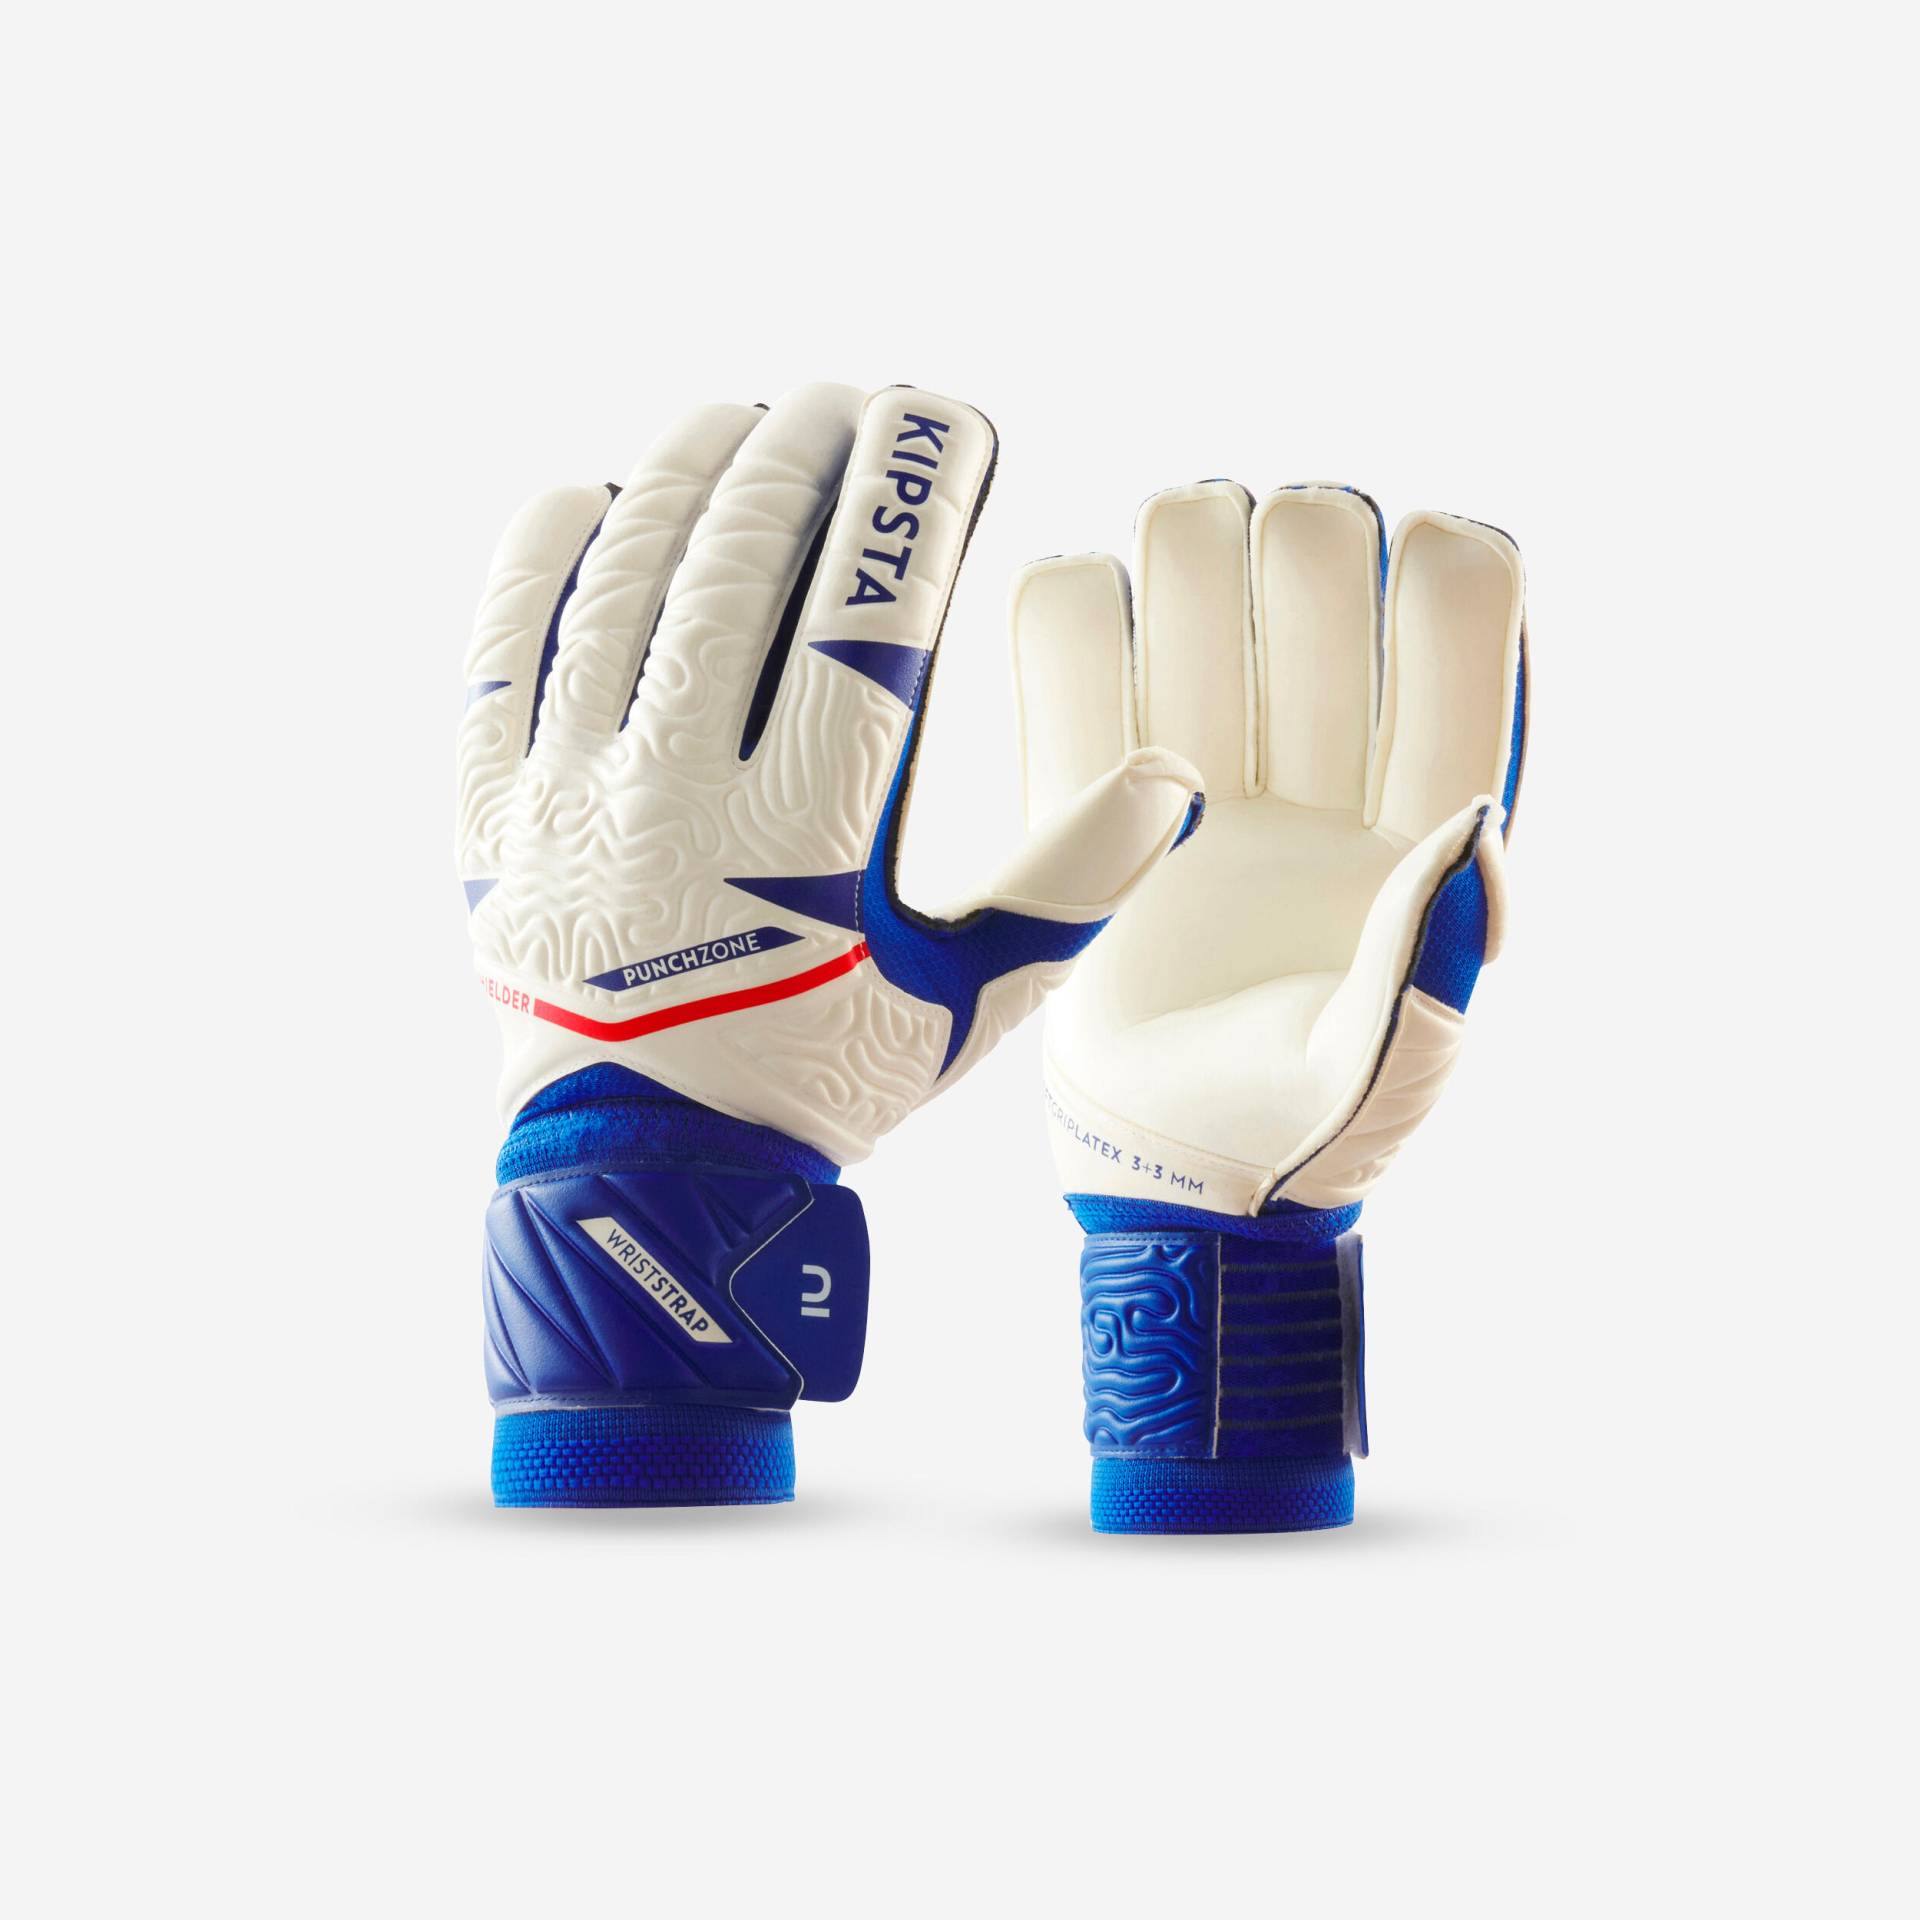 Damen/Herren Fussball Torwarthandschuhe - F500 Viralto Shielder weiss/blau von KIPSTA